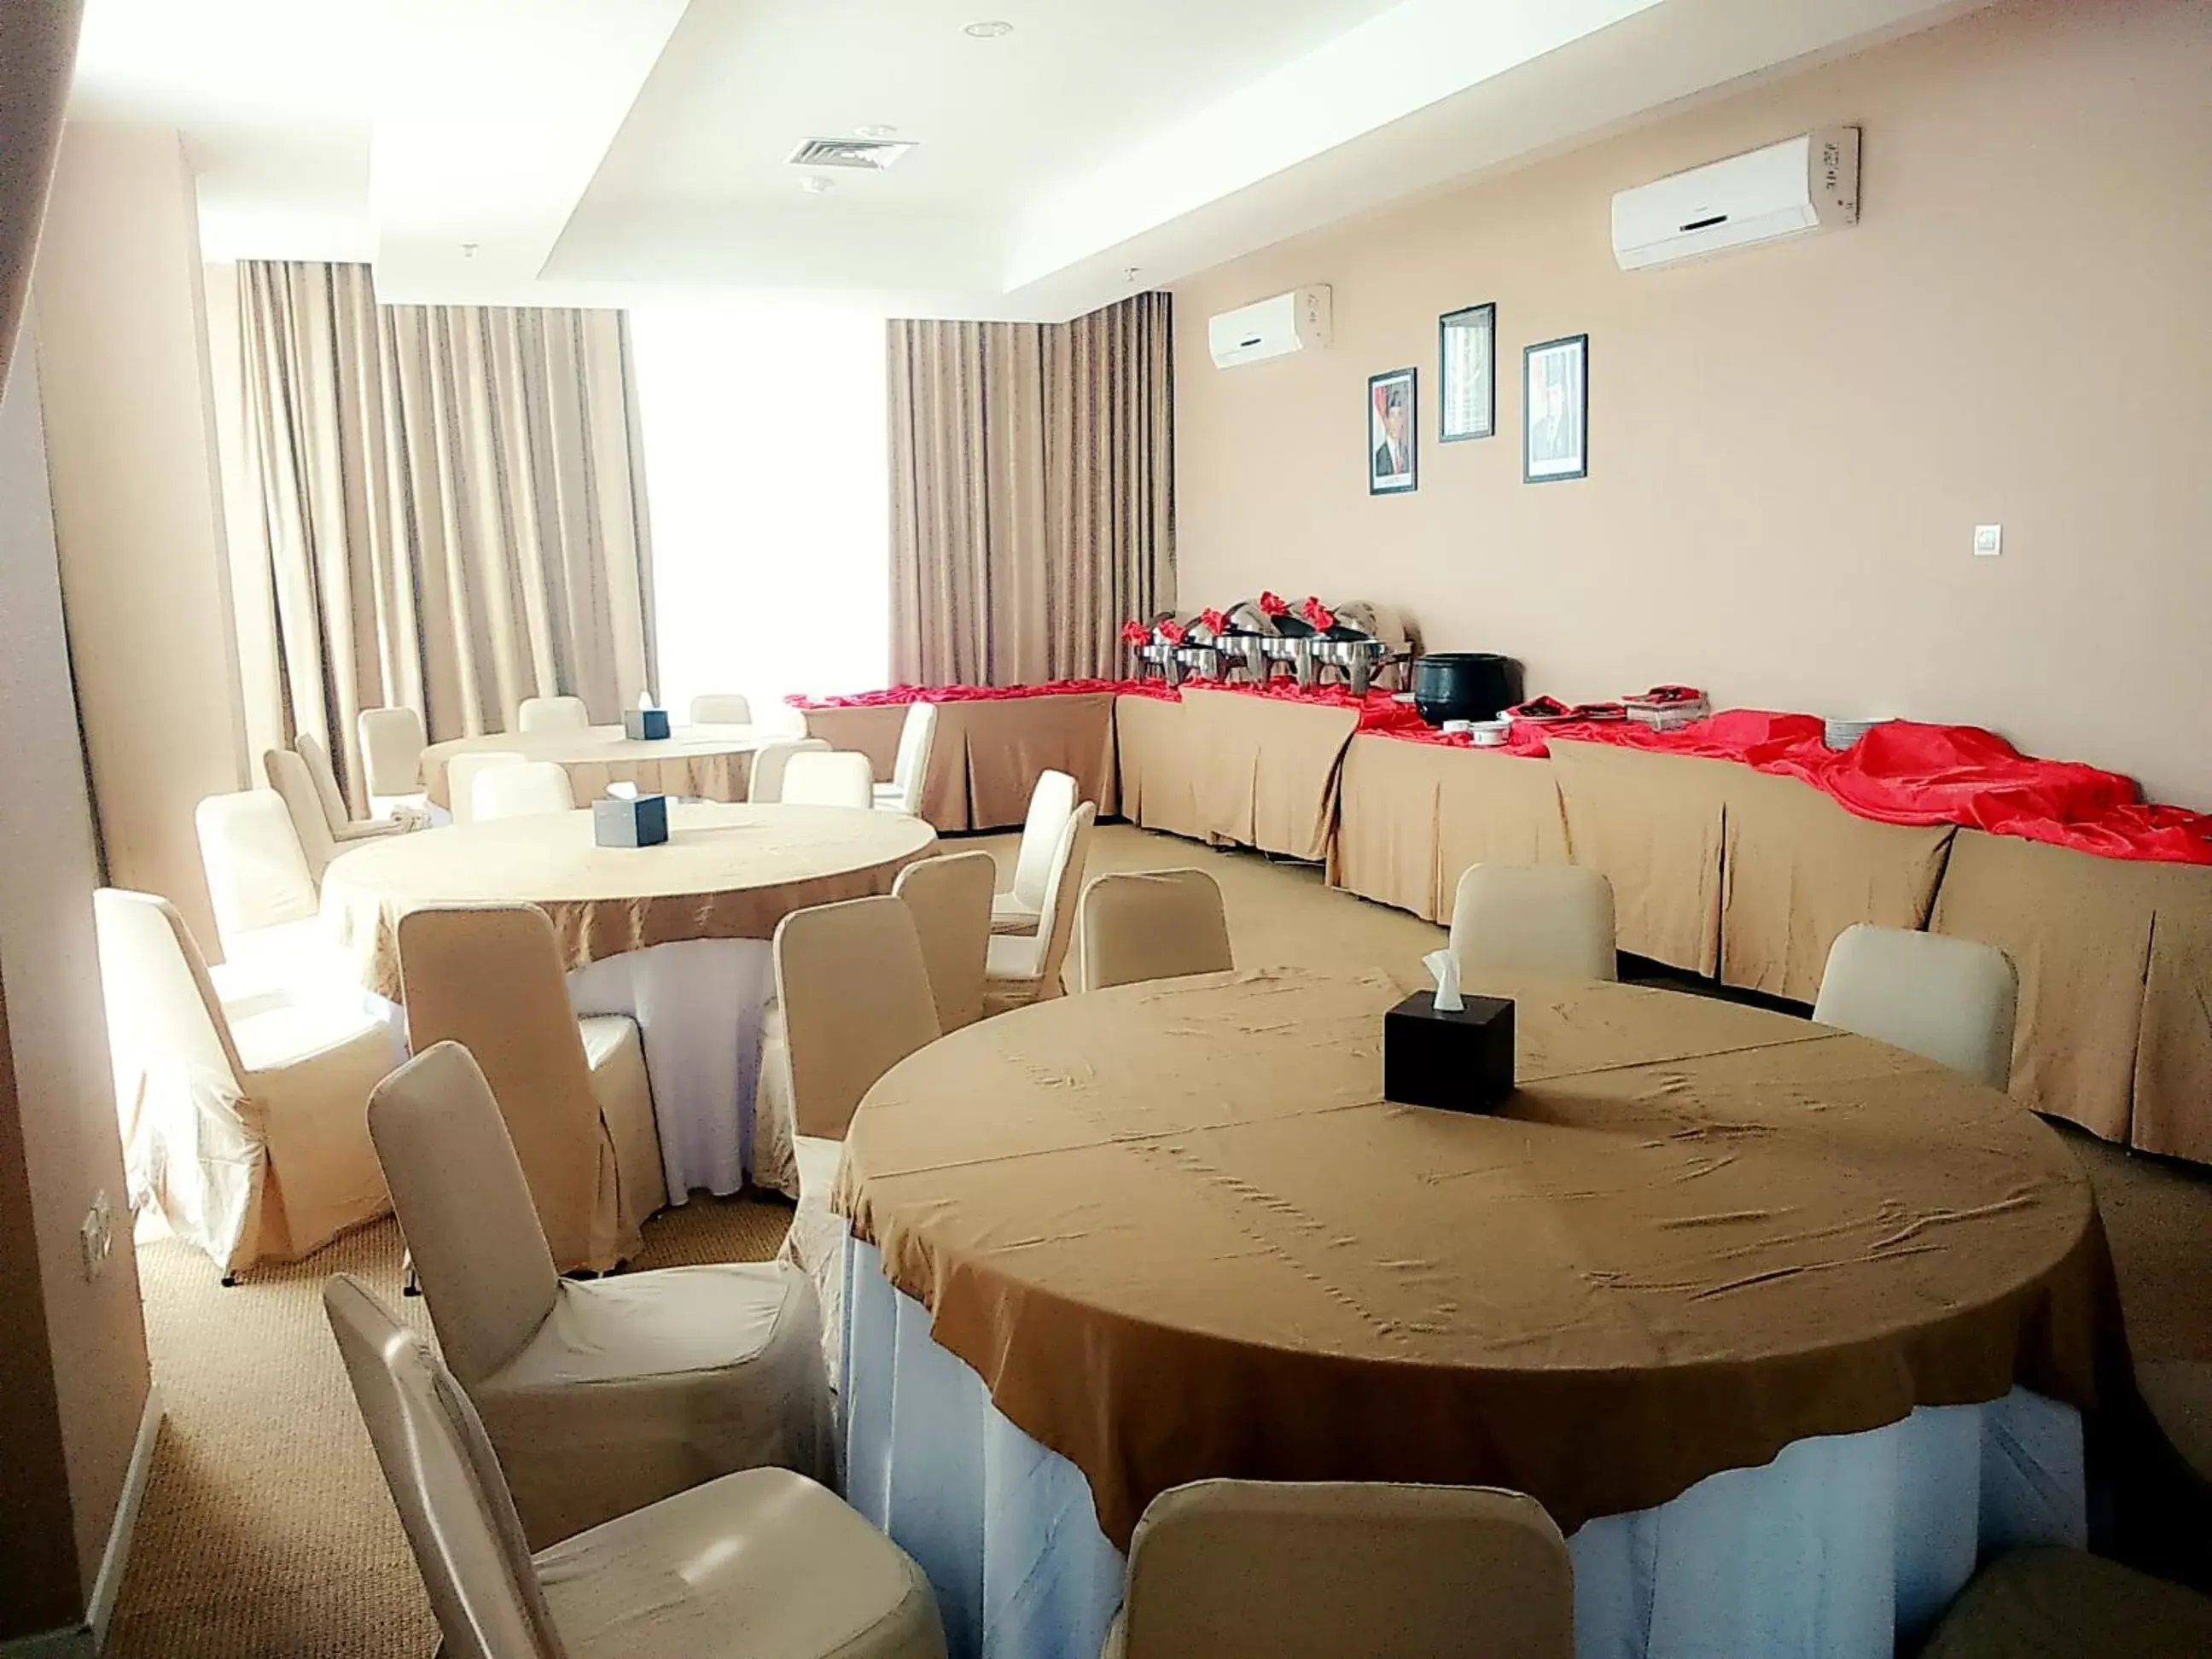 Banquet/Function facilities, Banquet Facilities in Hotel Dafam Pekanbaru